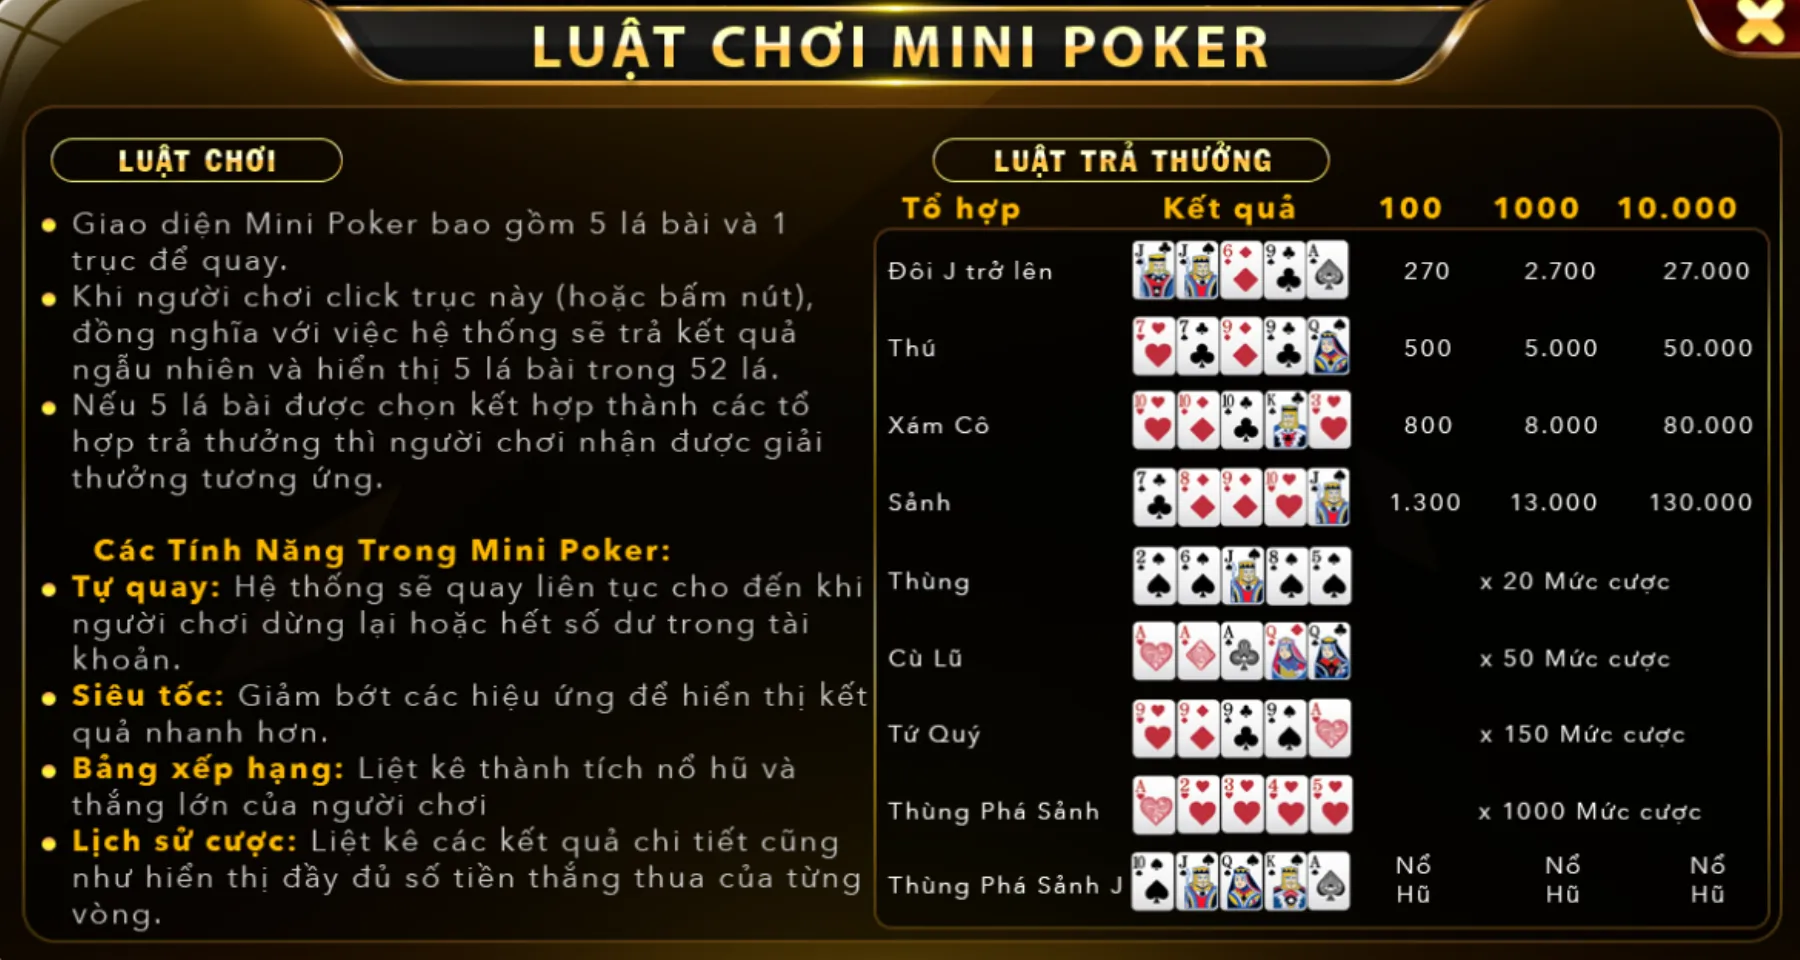 Luật chơi Mini Poker cơ bản nhất cần phải nắm